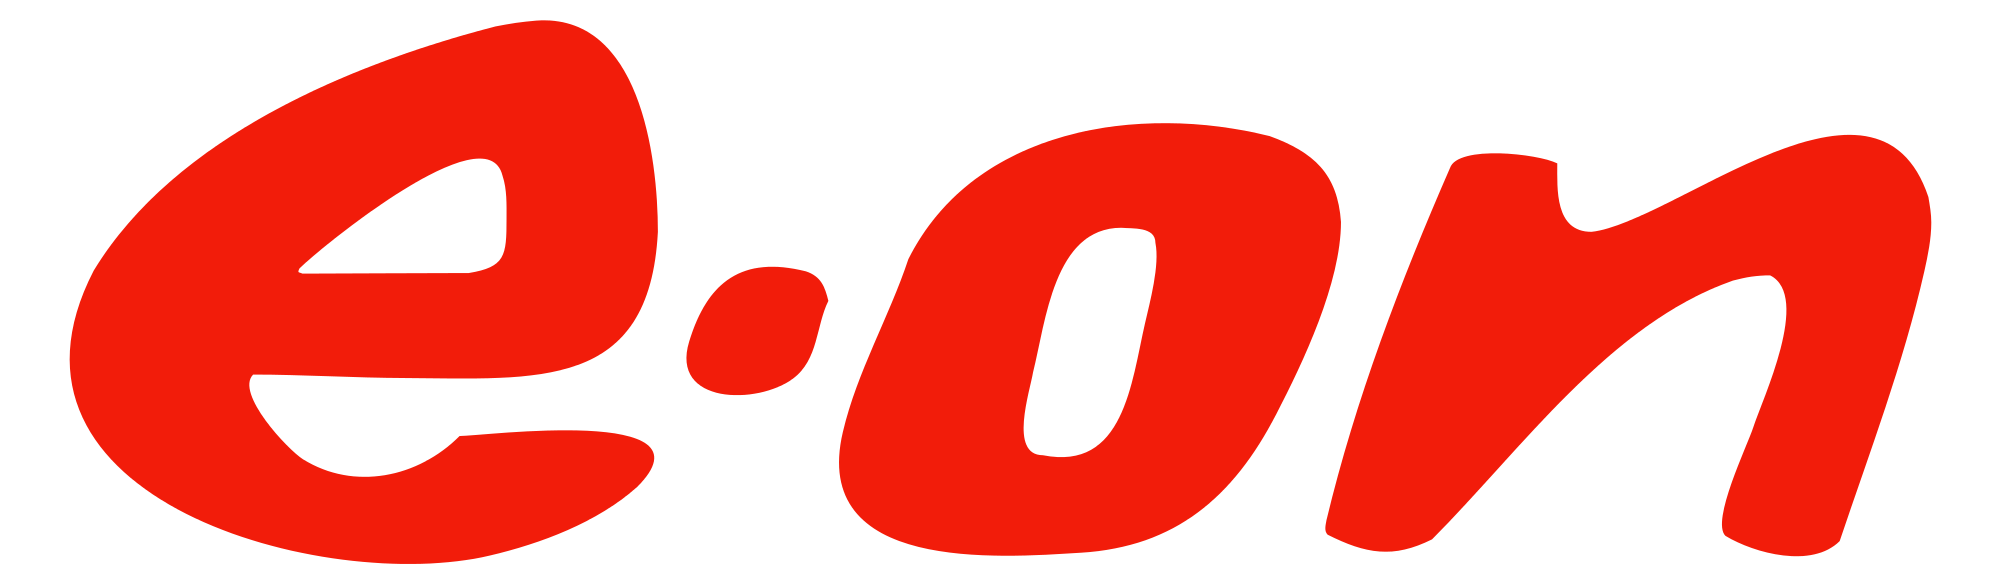 EON_Logo.png